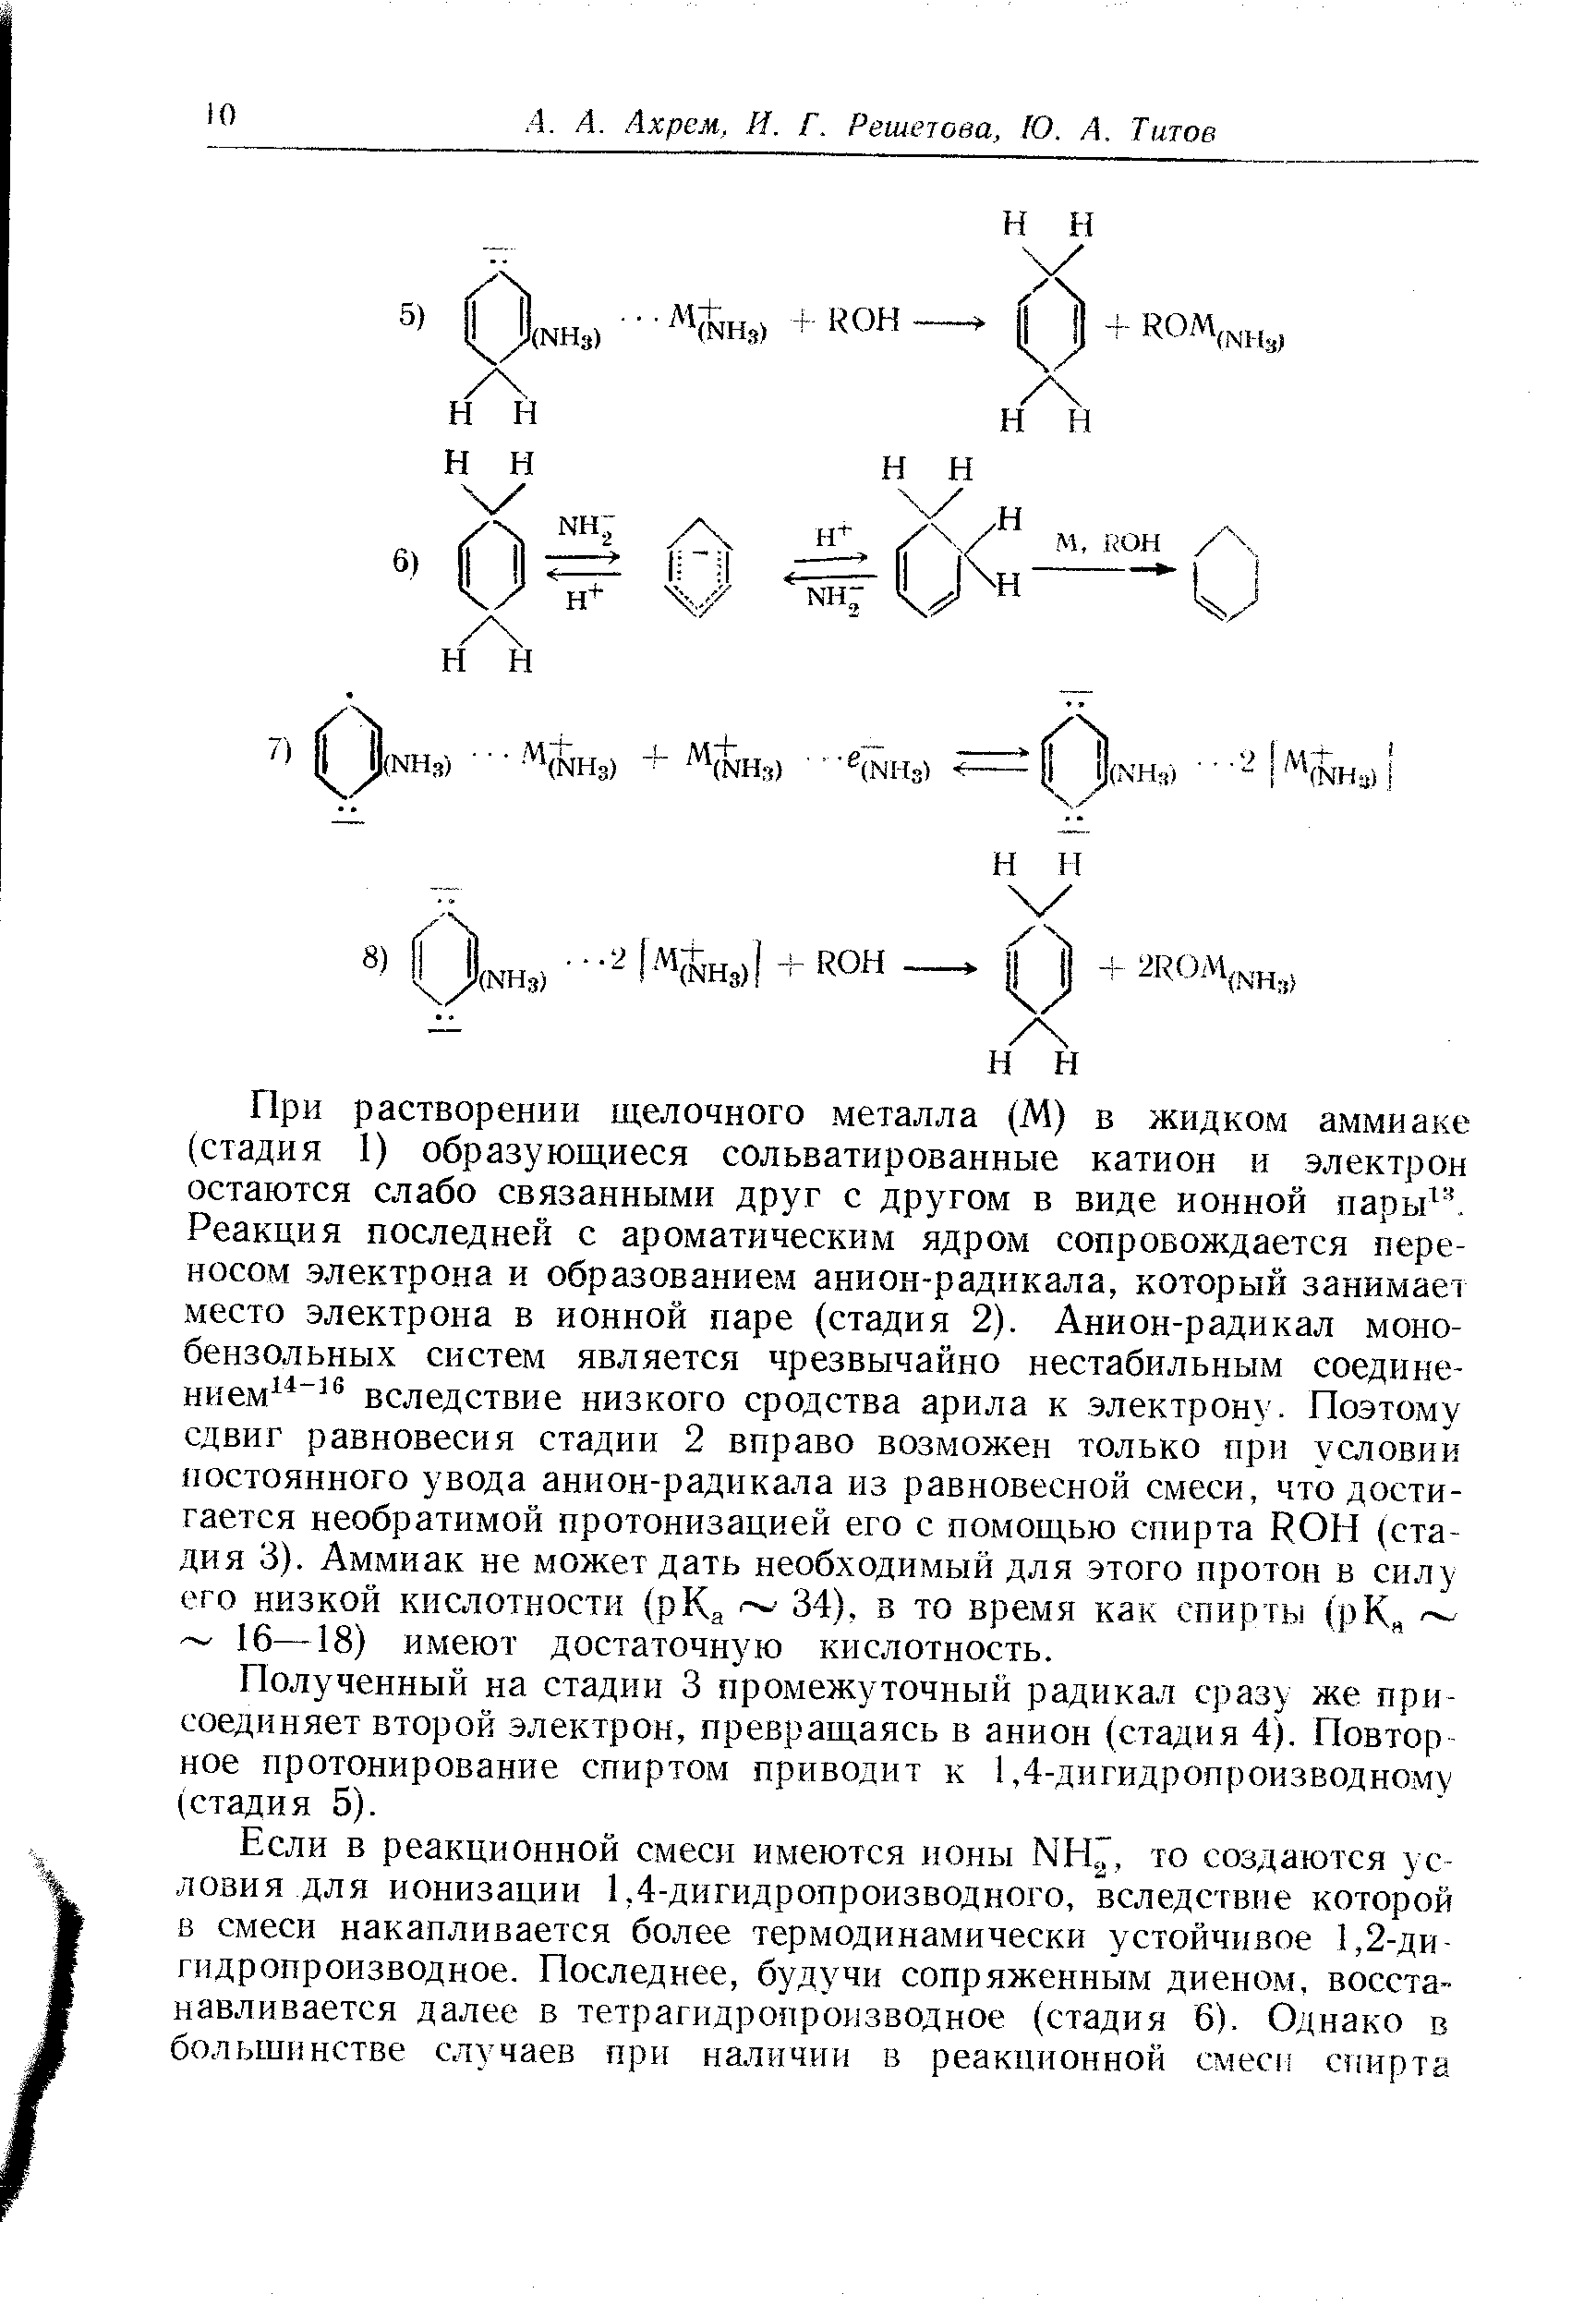 Полученный на стадии 3 промежуточный радикал сразу же присоединяет второй электрон, превращаясь в анион (стадия 4). Повтор ное протонирование спиртом приводит к 1,4-дигидропроизводному (стадия 5).